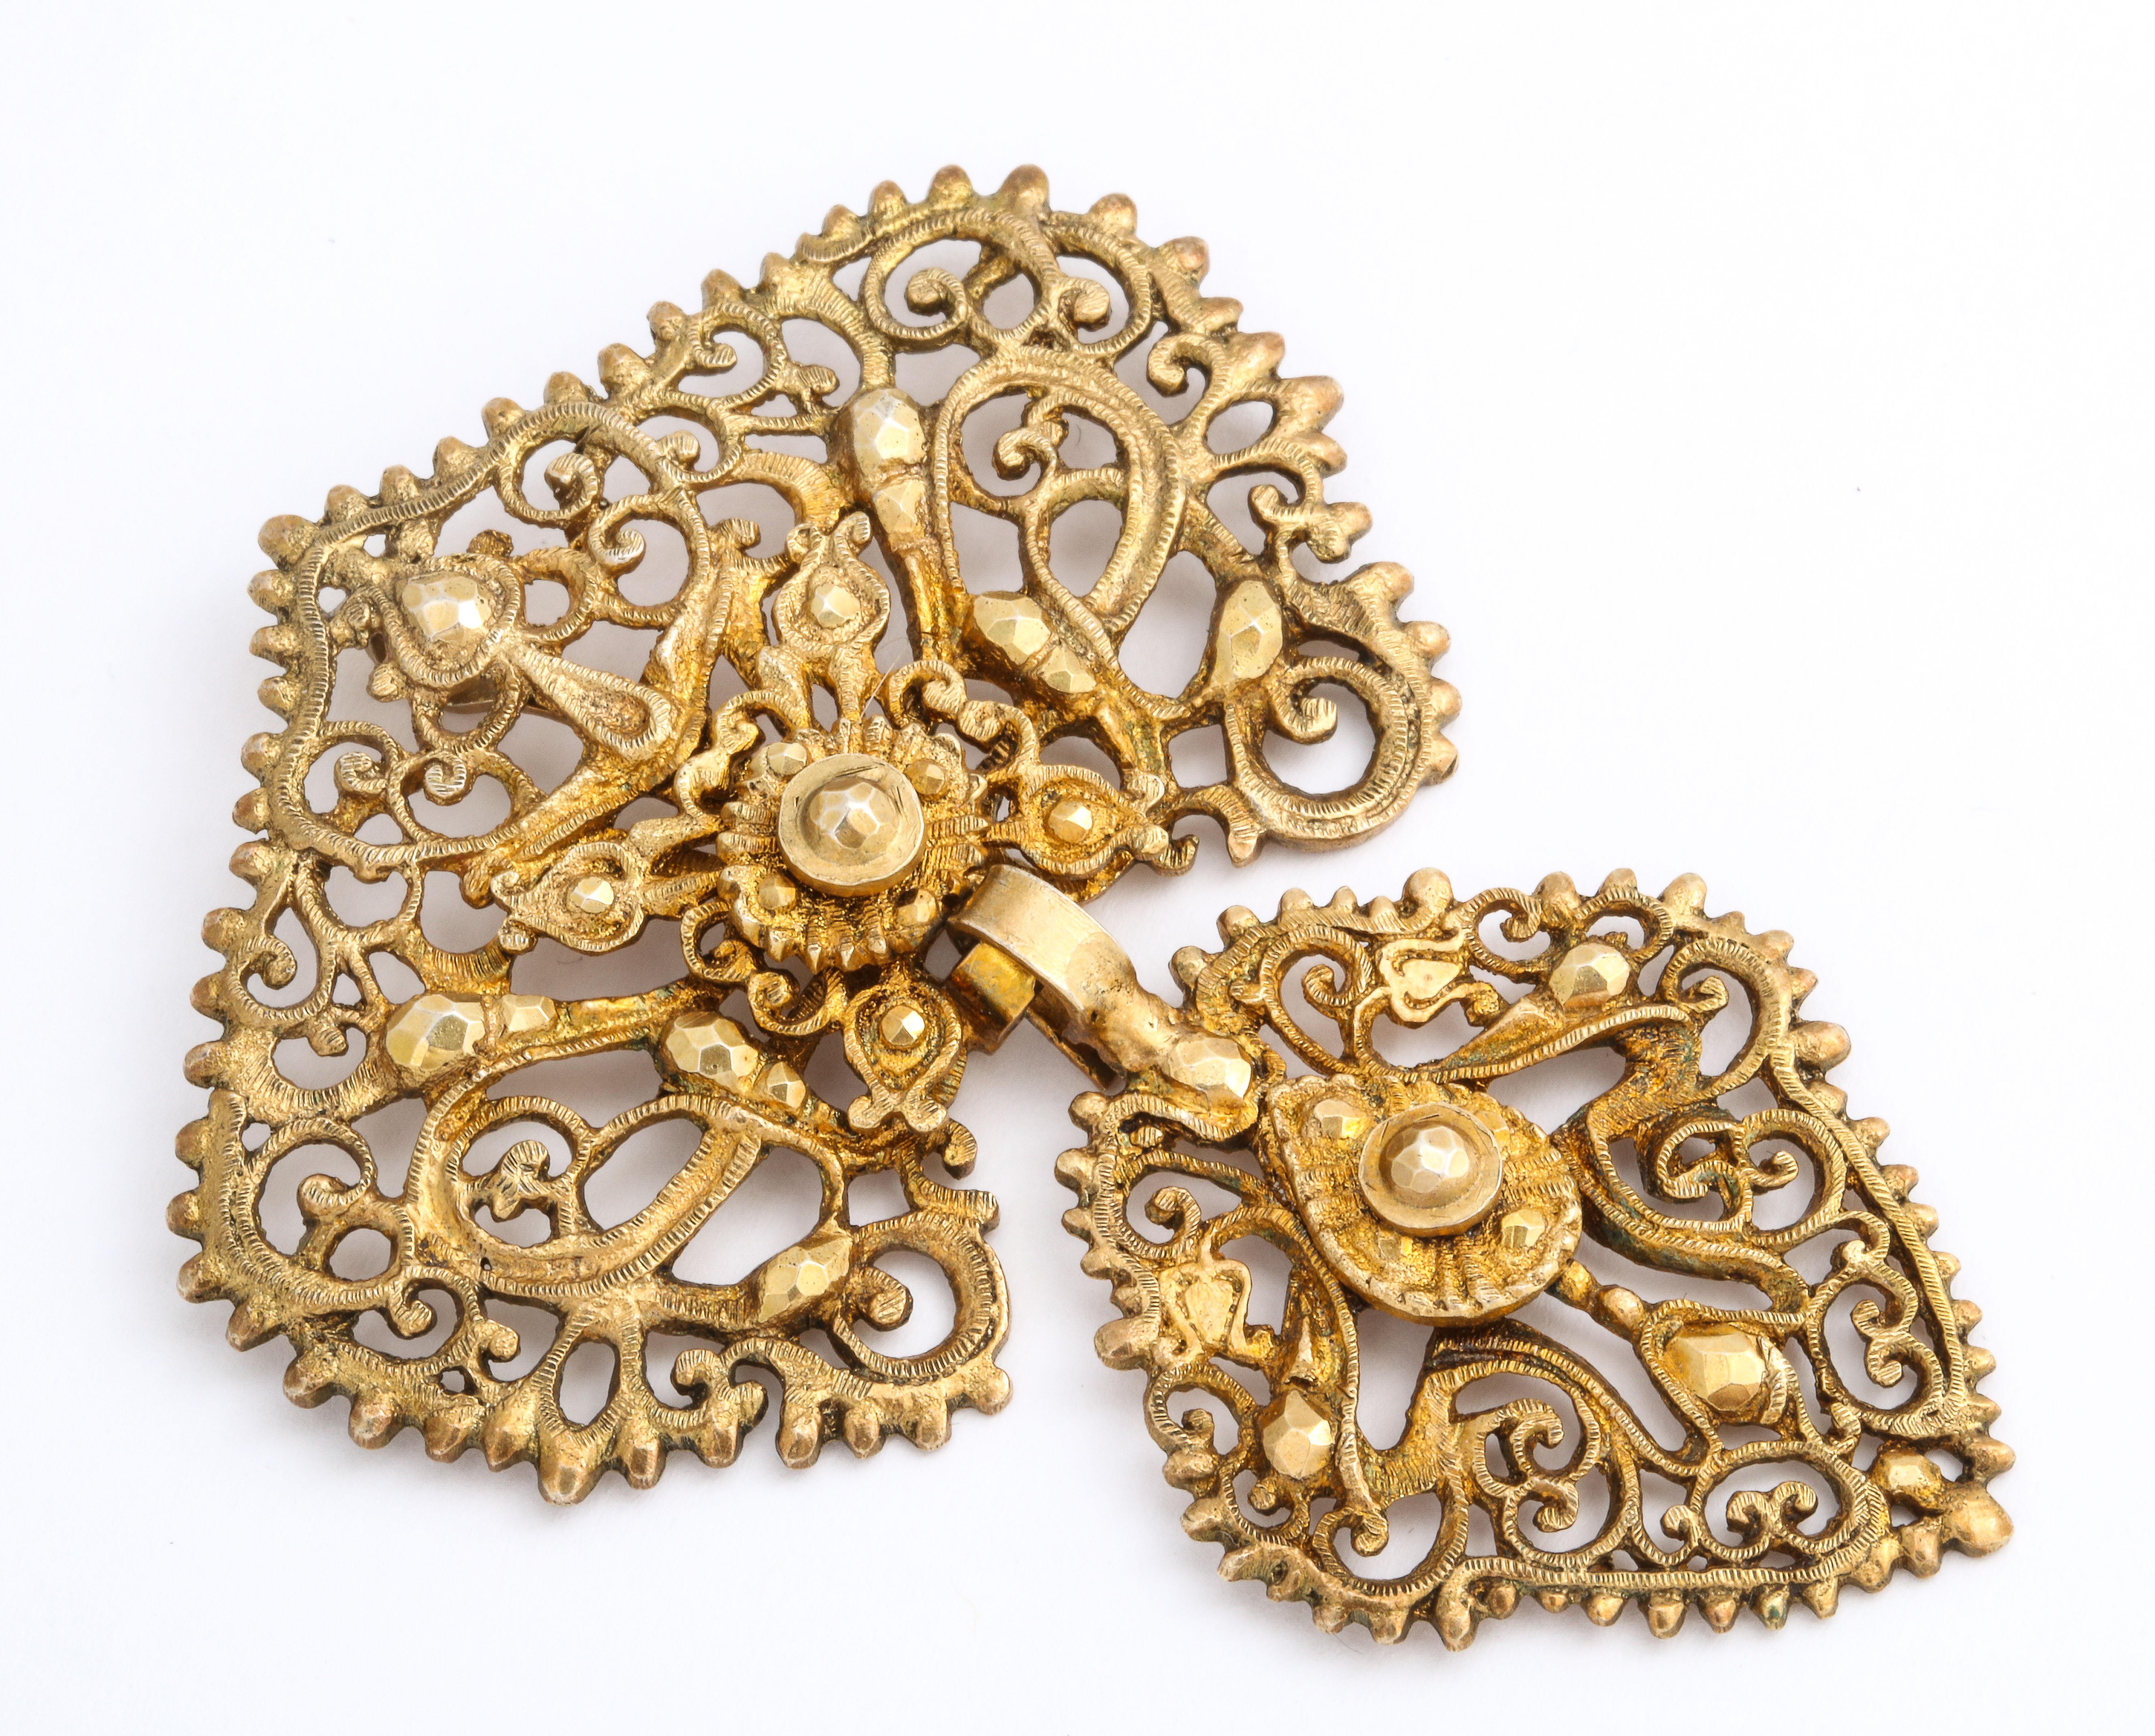 Prouvant que tous les beaux bijoux peuvent être autres que de l'or ou de l'argent, ce pendentif géorgien en dentelle ajourée dans un motif de vignes florales imite le vrai bijou fabriqué vers 1800, mais en métal doré. La texture est au rendez-vous